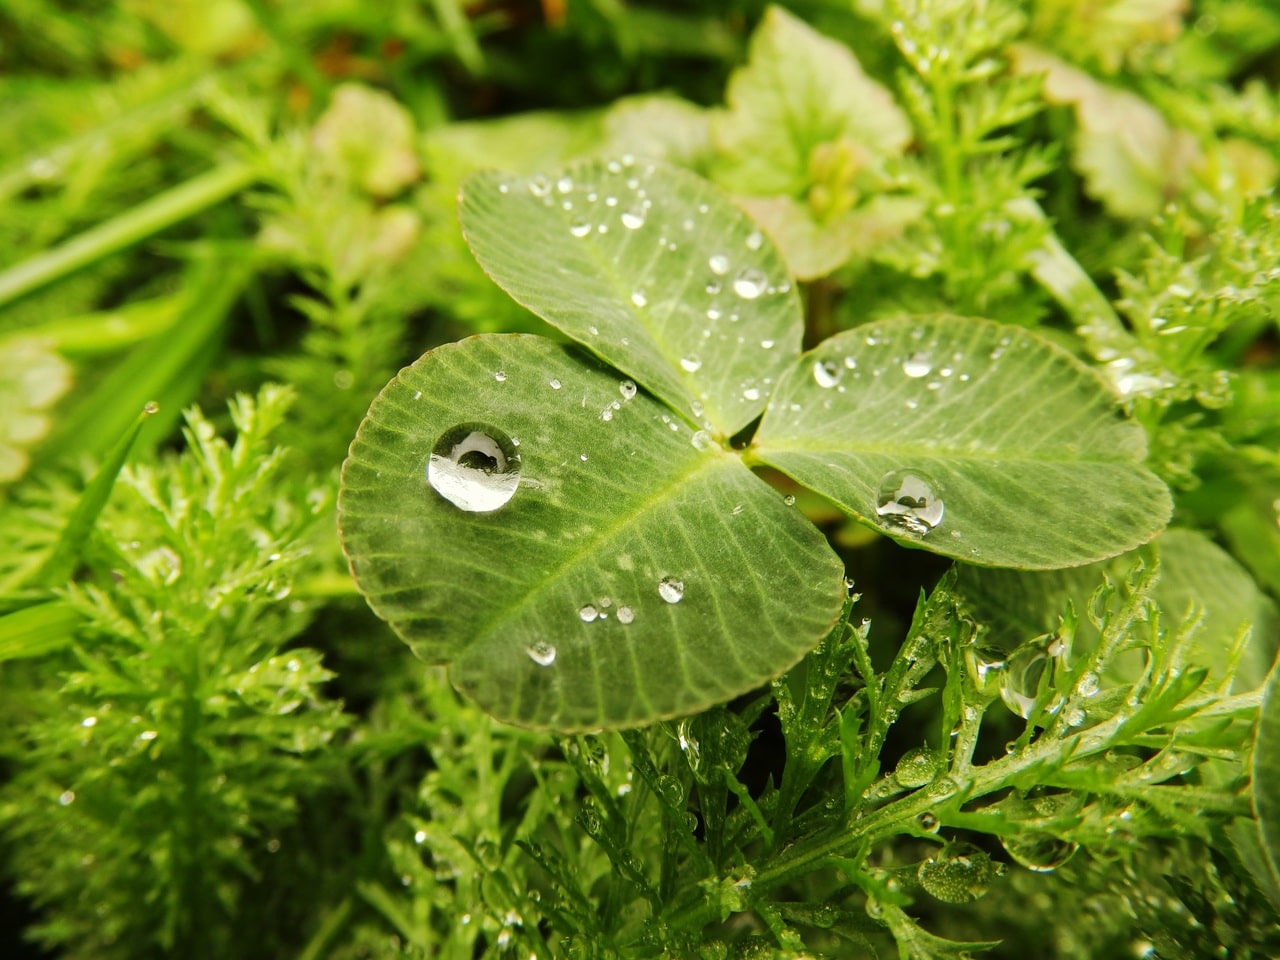 Planter trenger vann, men regn kan forårsake problemer